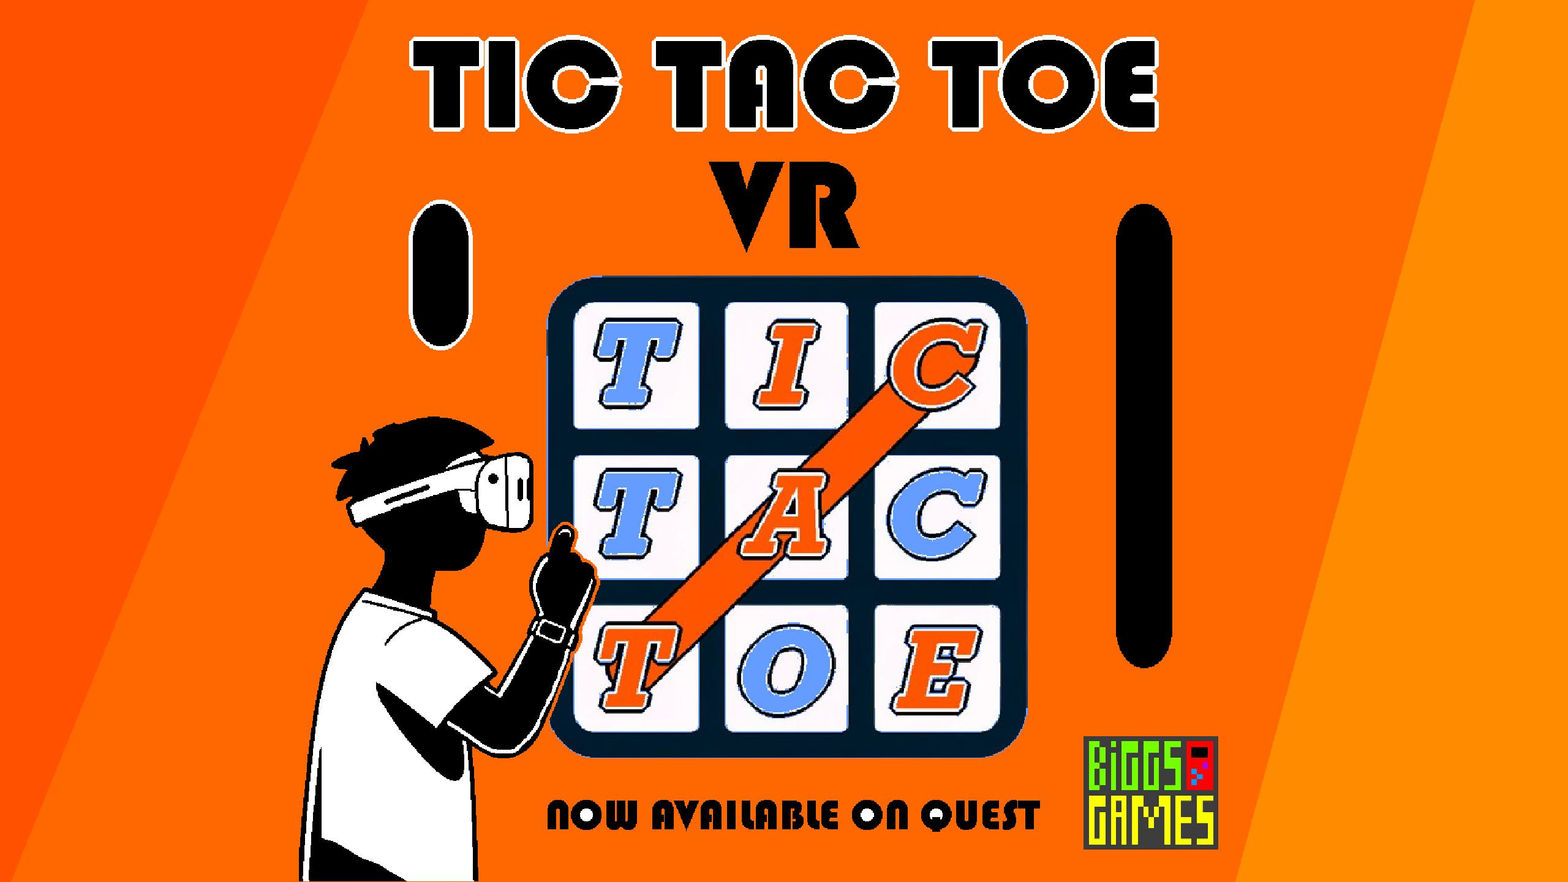 Tic Tac Toe VR